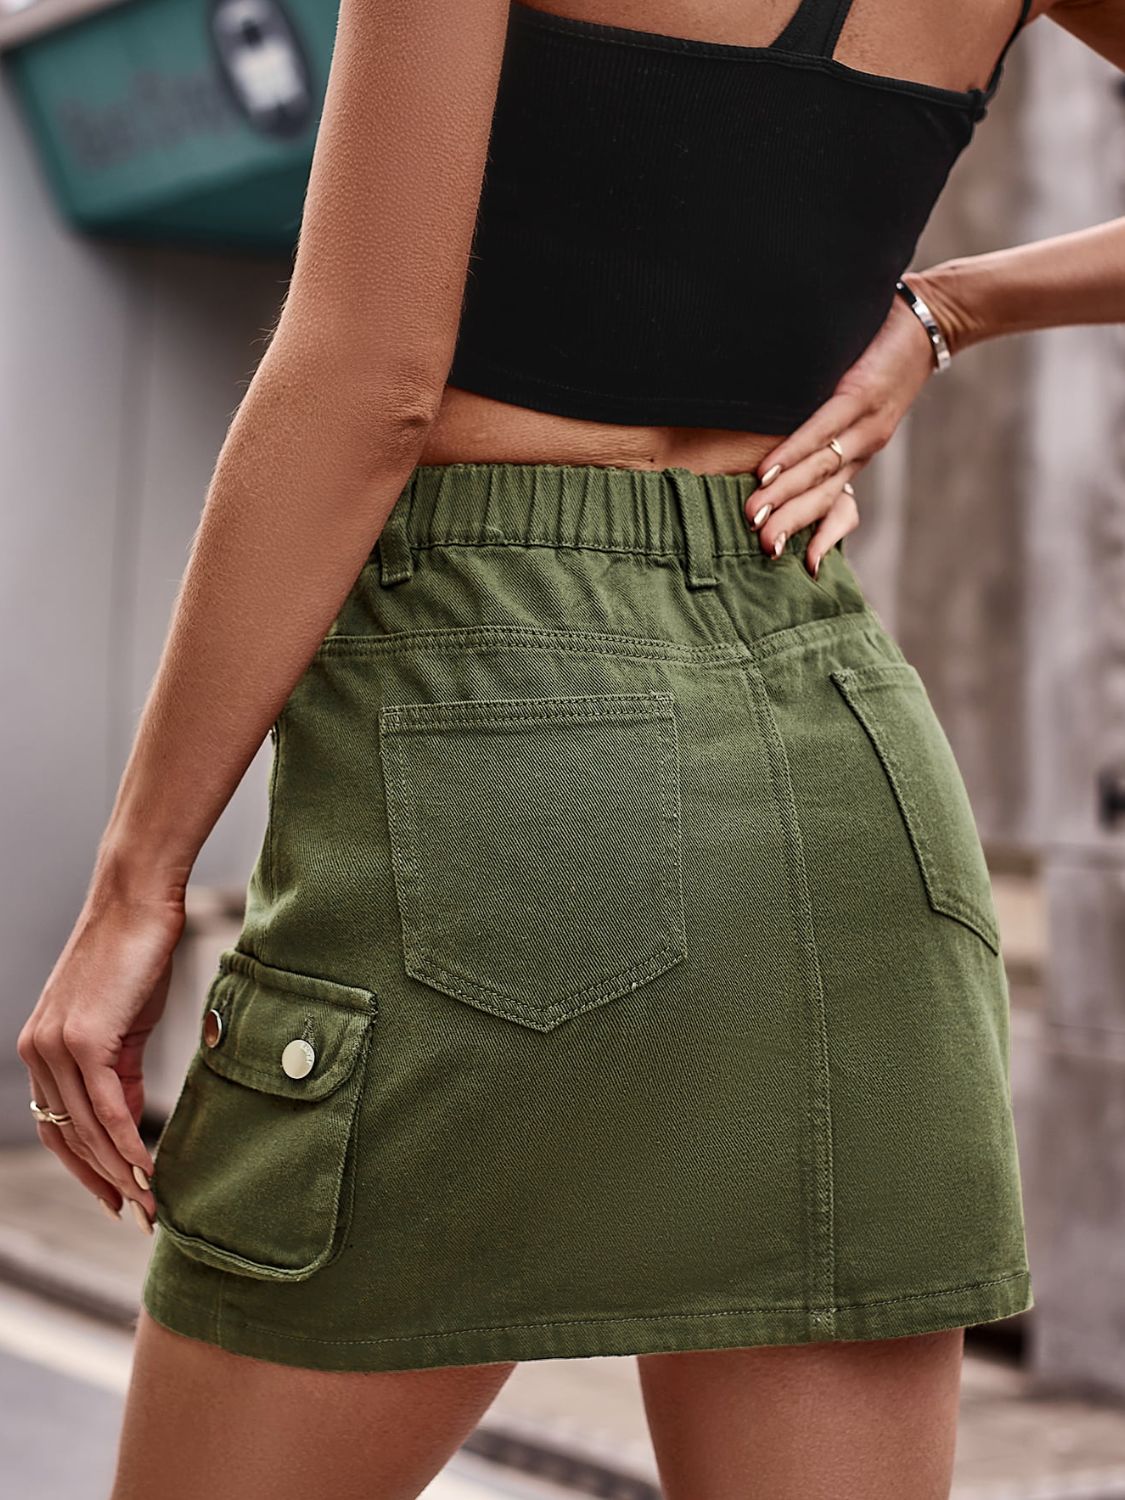 kuhl adventure women's olive green denim skirt size 2